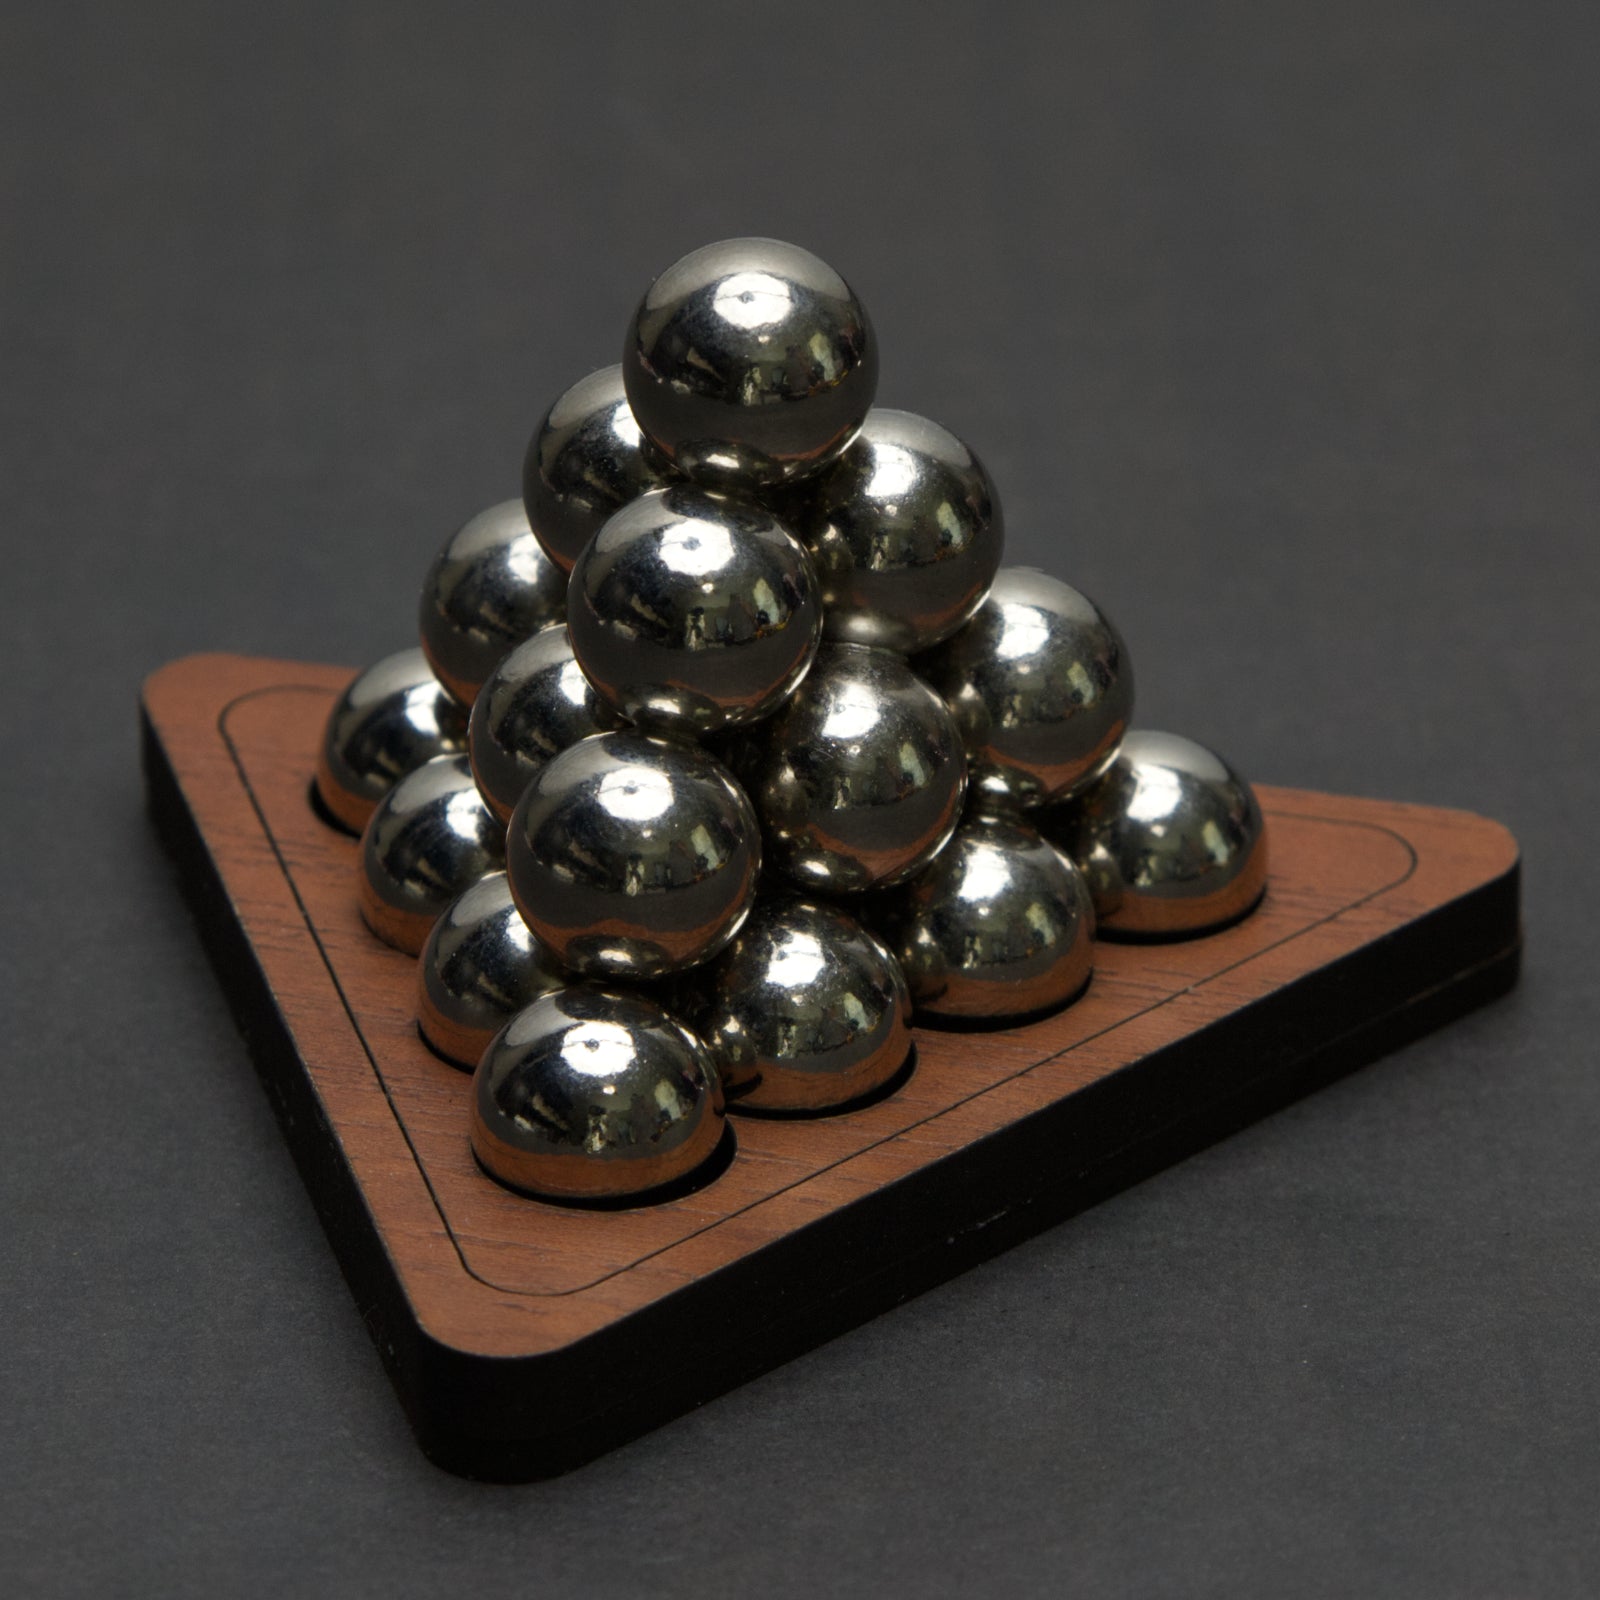 Kugelpyramide 3D Packing Puzzle - Level 8 - Siebenstein Spiele